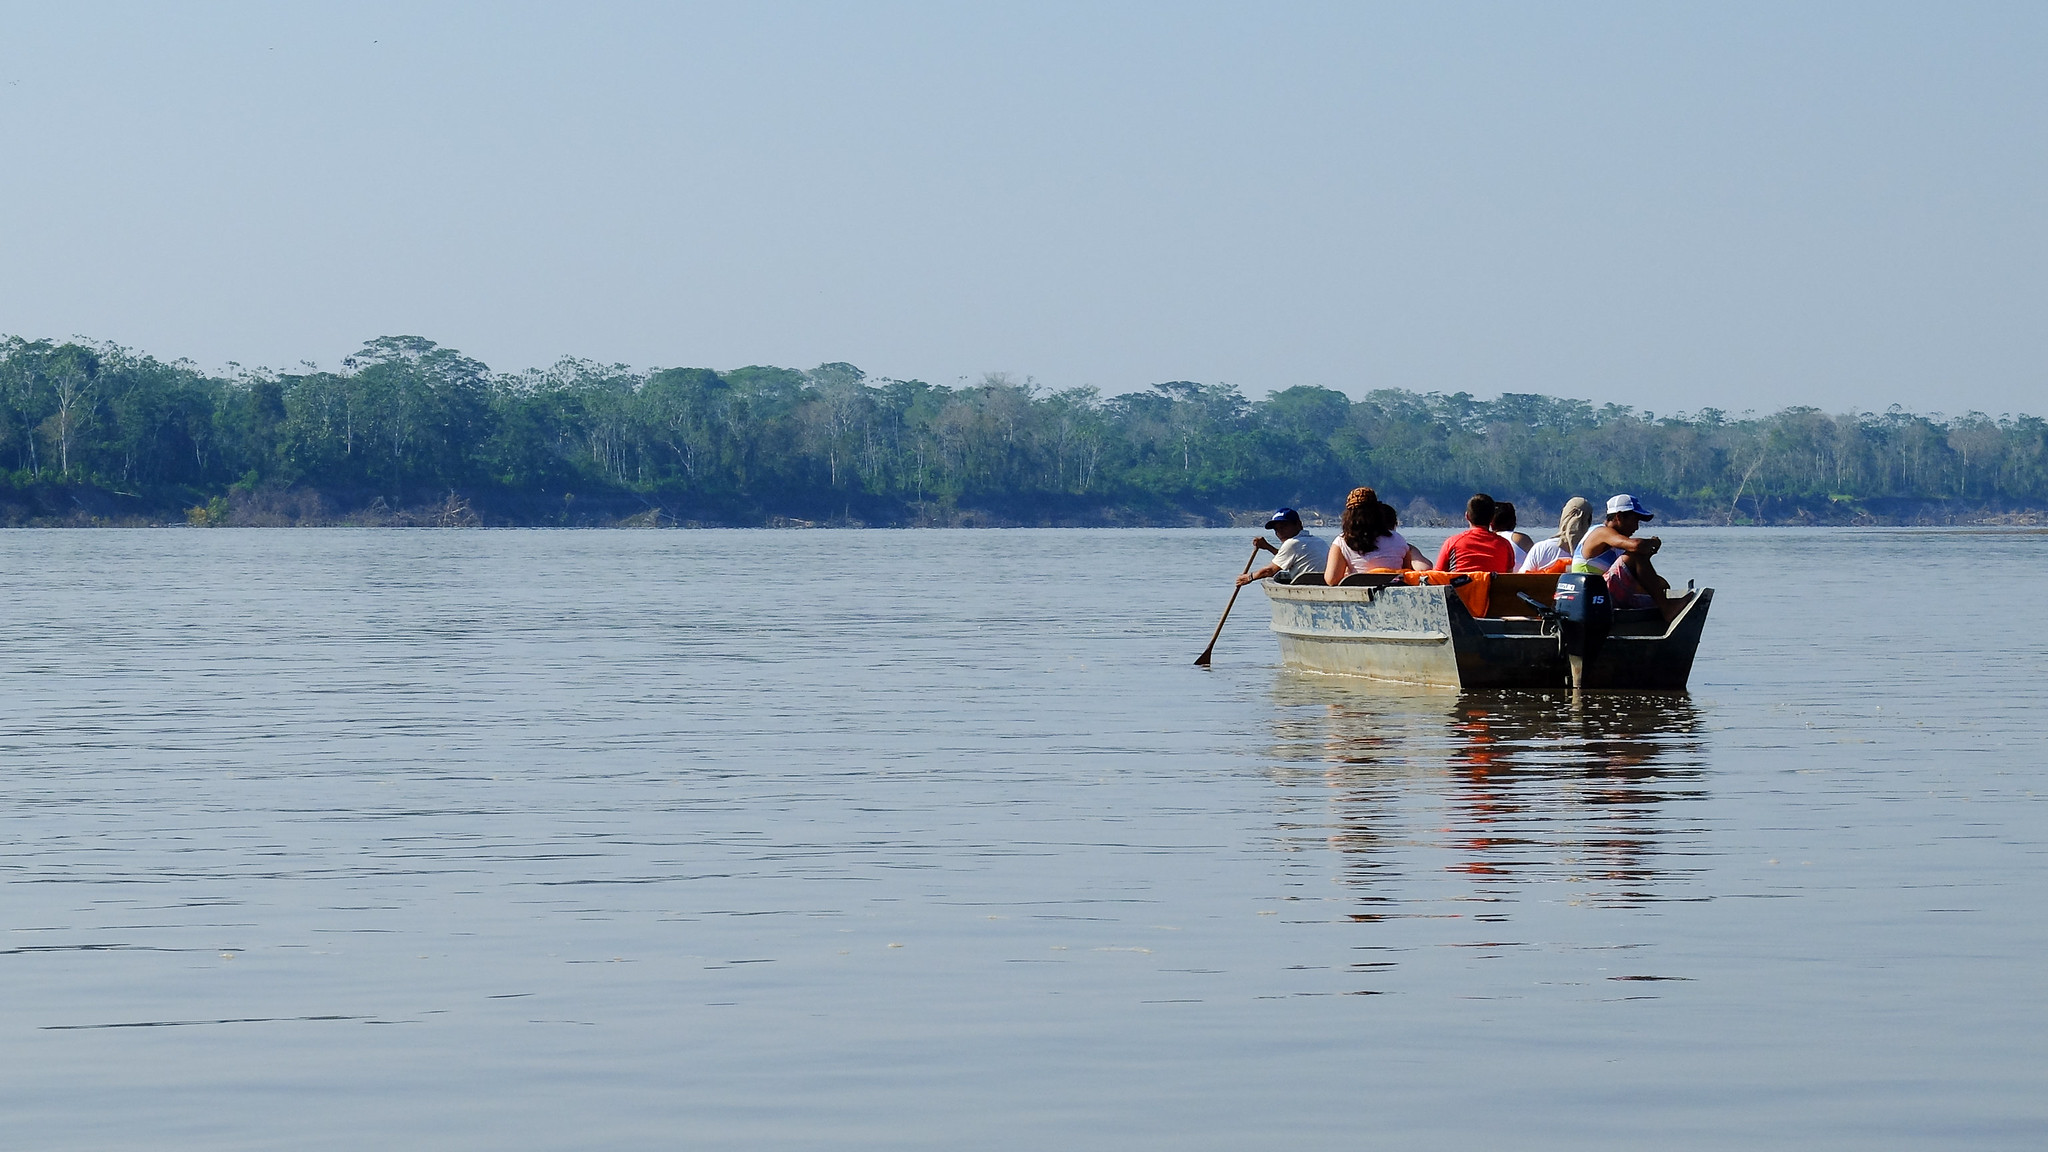 <p>Comunidades en Peru que dependen del río para pesca y transporte sostiene que el proyecto podría afectar su modo de vida (imagen: <a href="https://www.flickr.com/photos/michalo/34866309253/in/photostream/">Anna &amp; Michal</a>)</p>